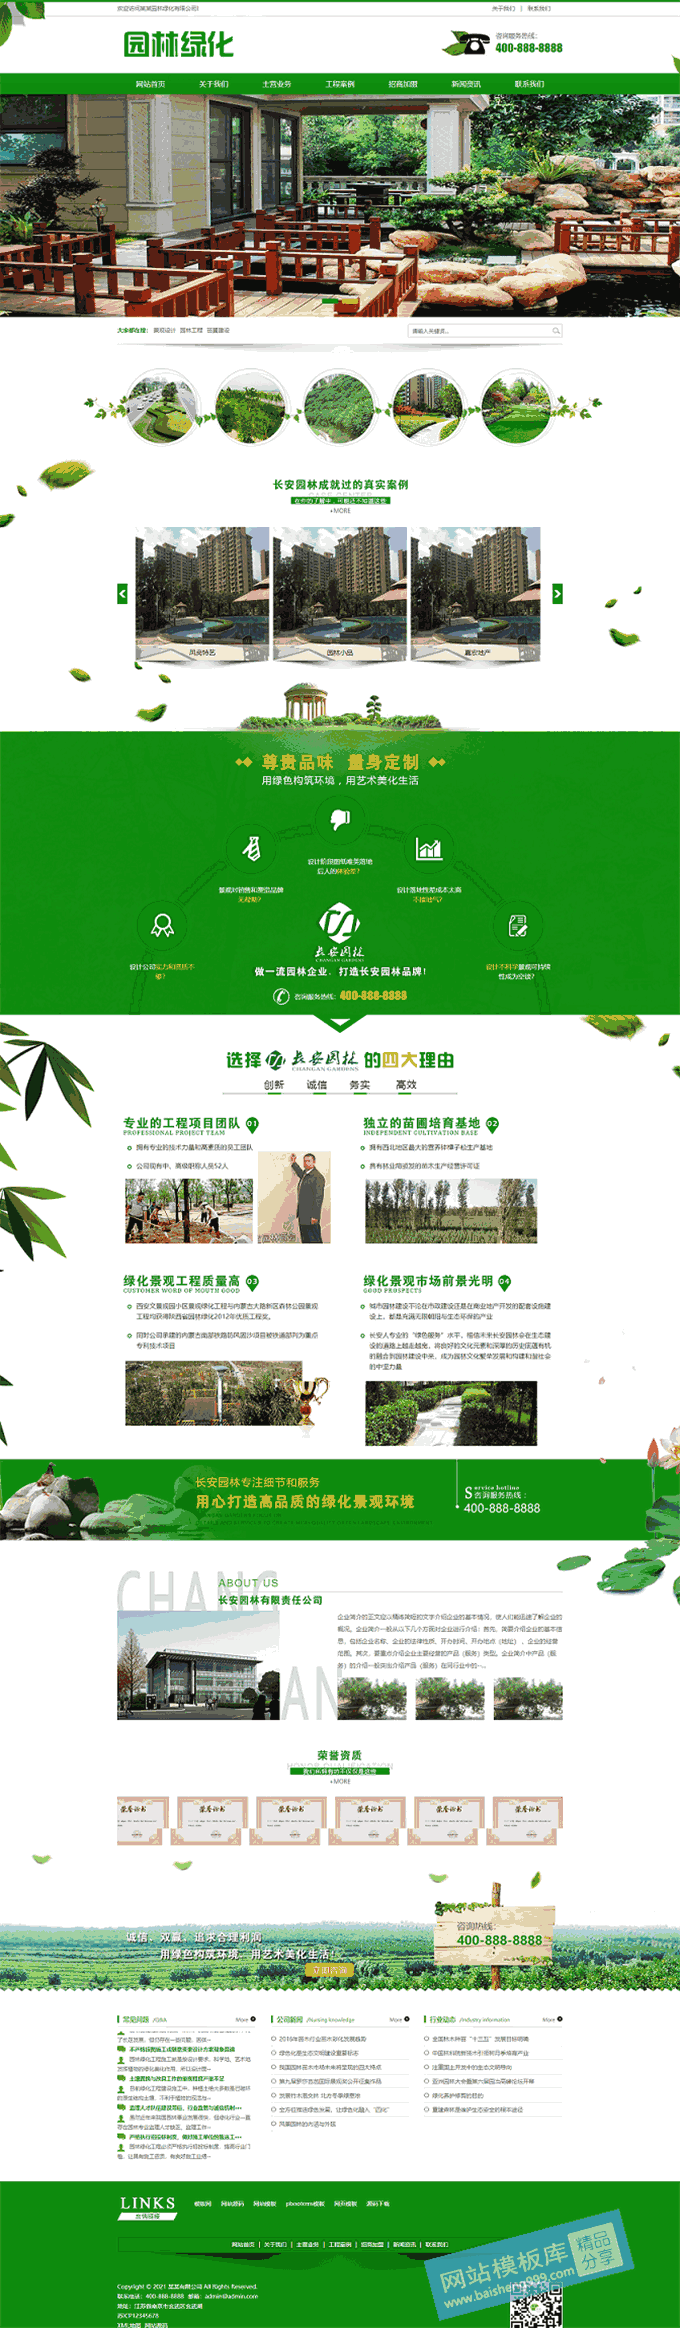 城市绿化建设公司小区园林设计公司网站WordPress模板首页图